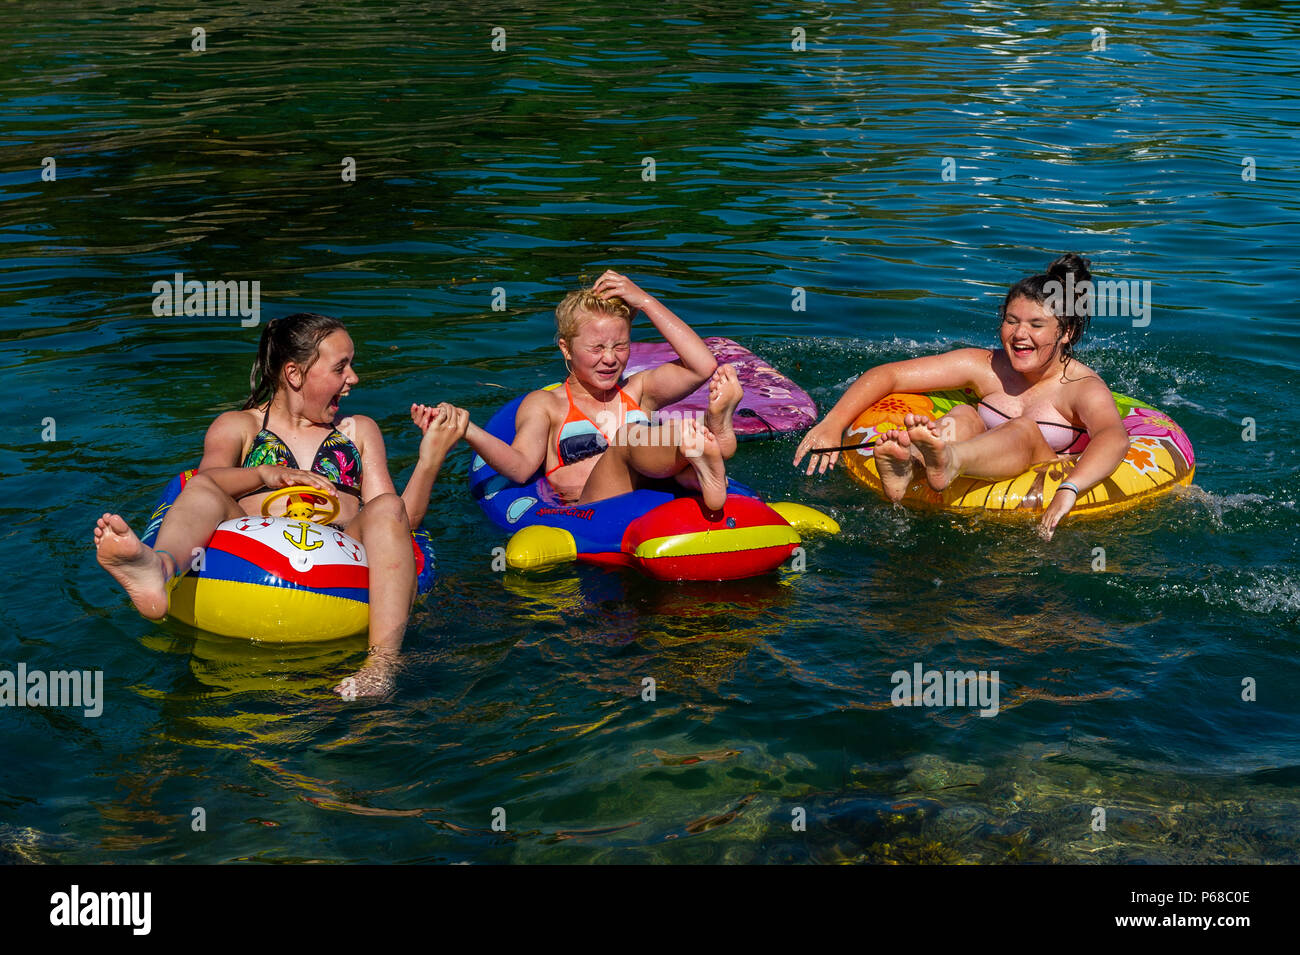 Schull, West Cork, Irlande. 28 juin 2018. Trois jeunes filles bénéficient du soleil en jouant dans l'eau à Schull. Les températures resteront à 20°C demain mais la pluie est prévue pour le week-end. Crédit : AG News/Alay Live News. Banque D'Images